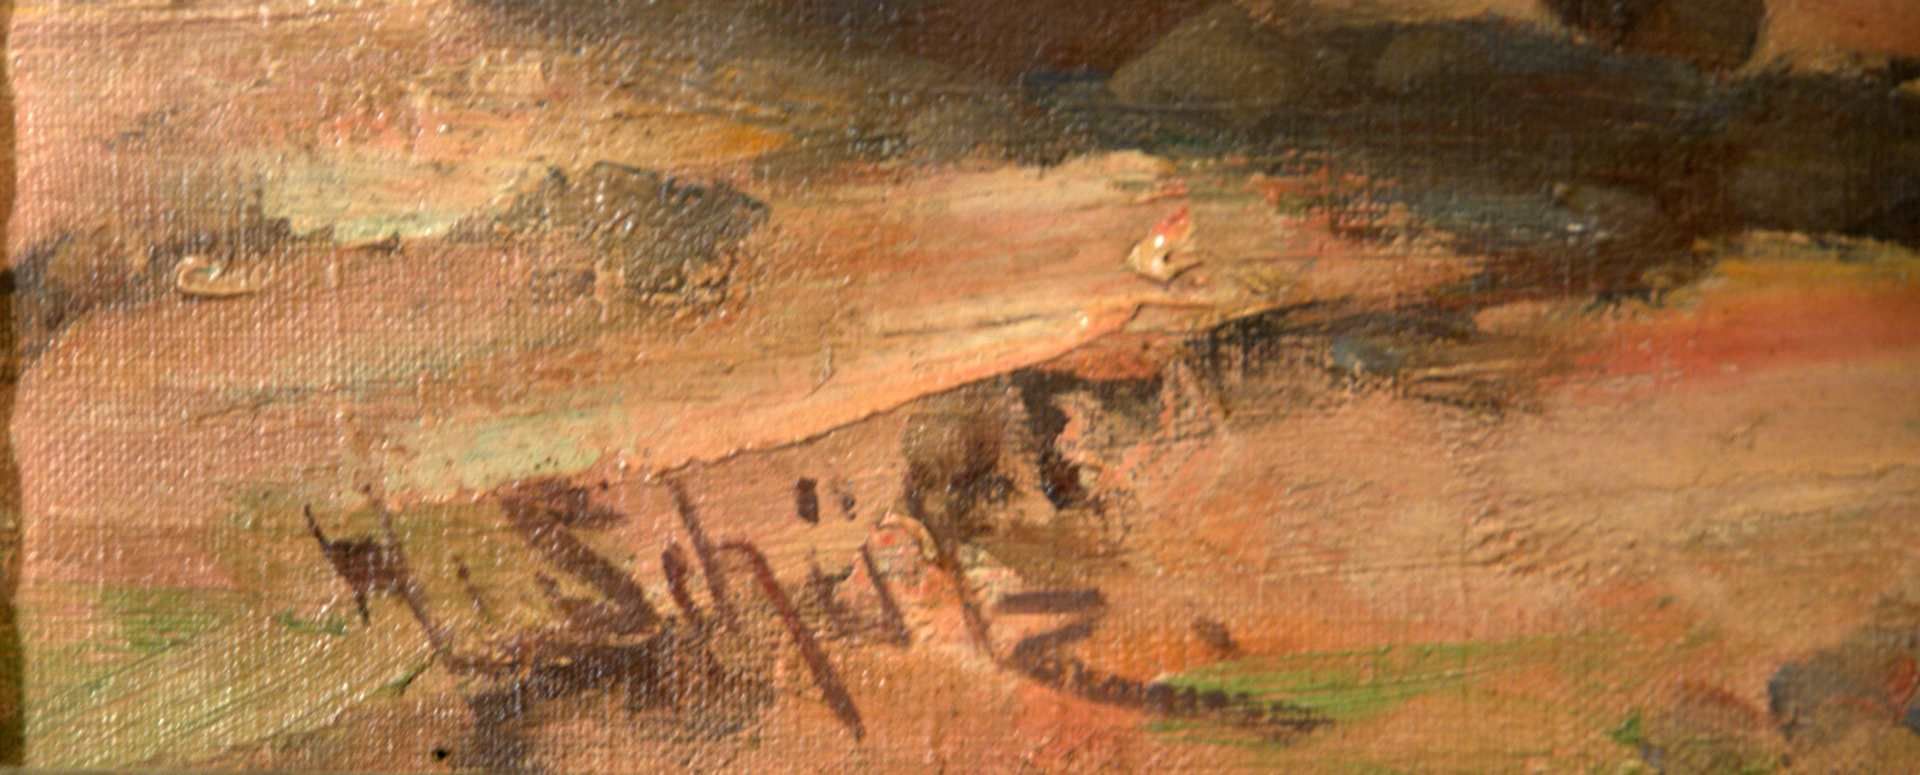 "Waldbauer mit Pferde", Öl/L, u.li.sig. W. SCHÜTZ?Ca. 57 x 84 cm - Bild 2 aus 2